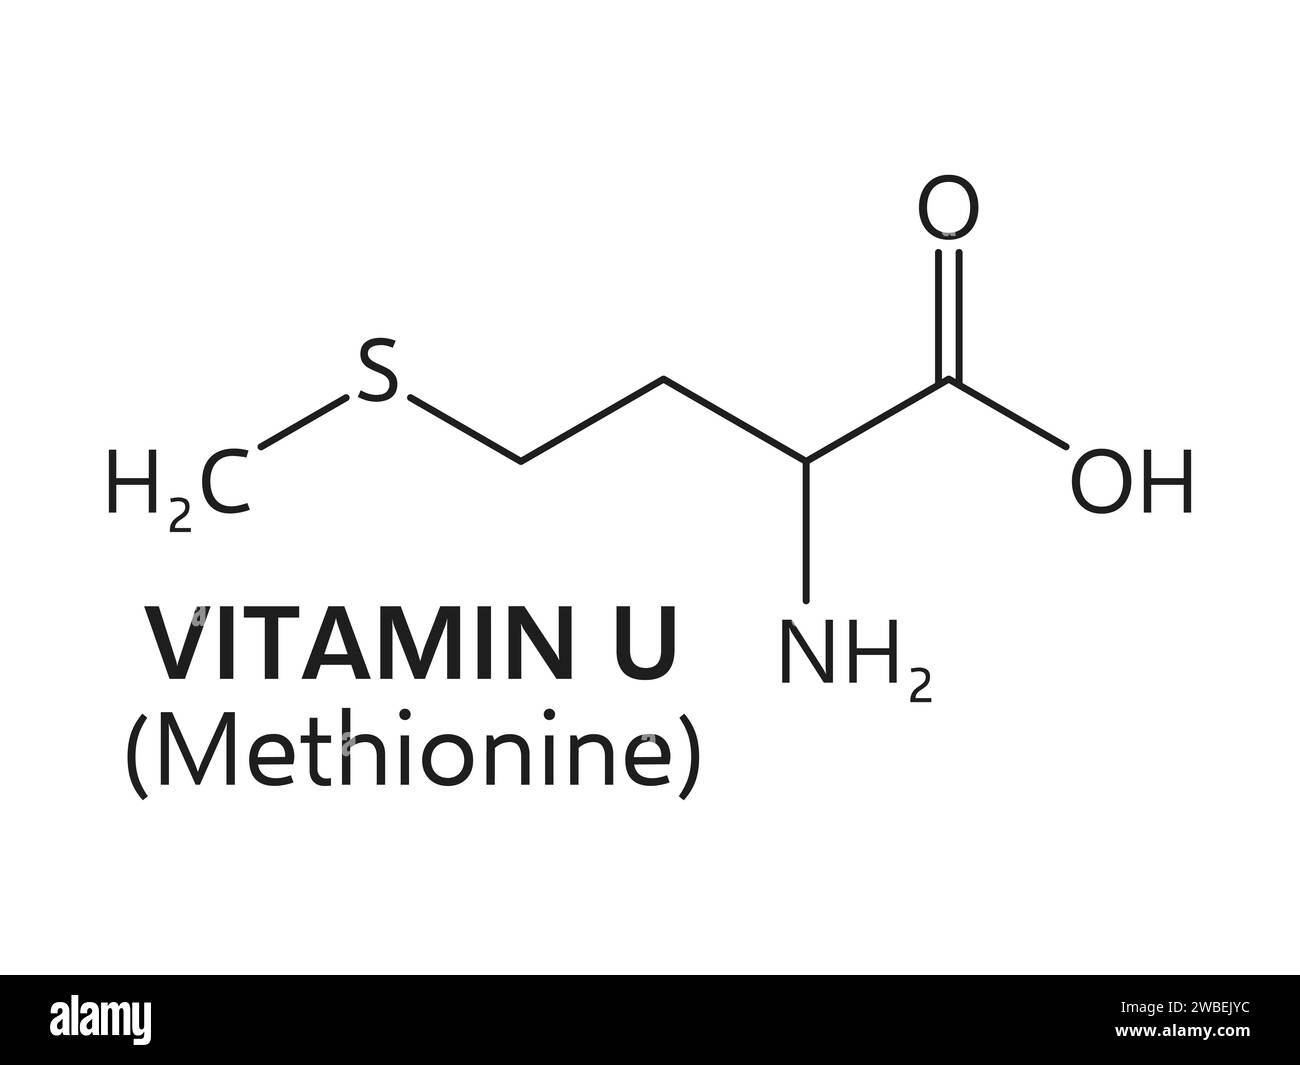 Vitamine U, ou formule de chlorure de méthylméthioninesulfonium, dérivé de méthionine, se compose de carbone, hydrogène, soufre, et des atomes de chlore disposés dans une structure moléculaire spécifique, schéma vectoriel Illustration de Vecteur